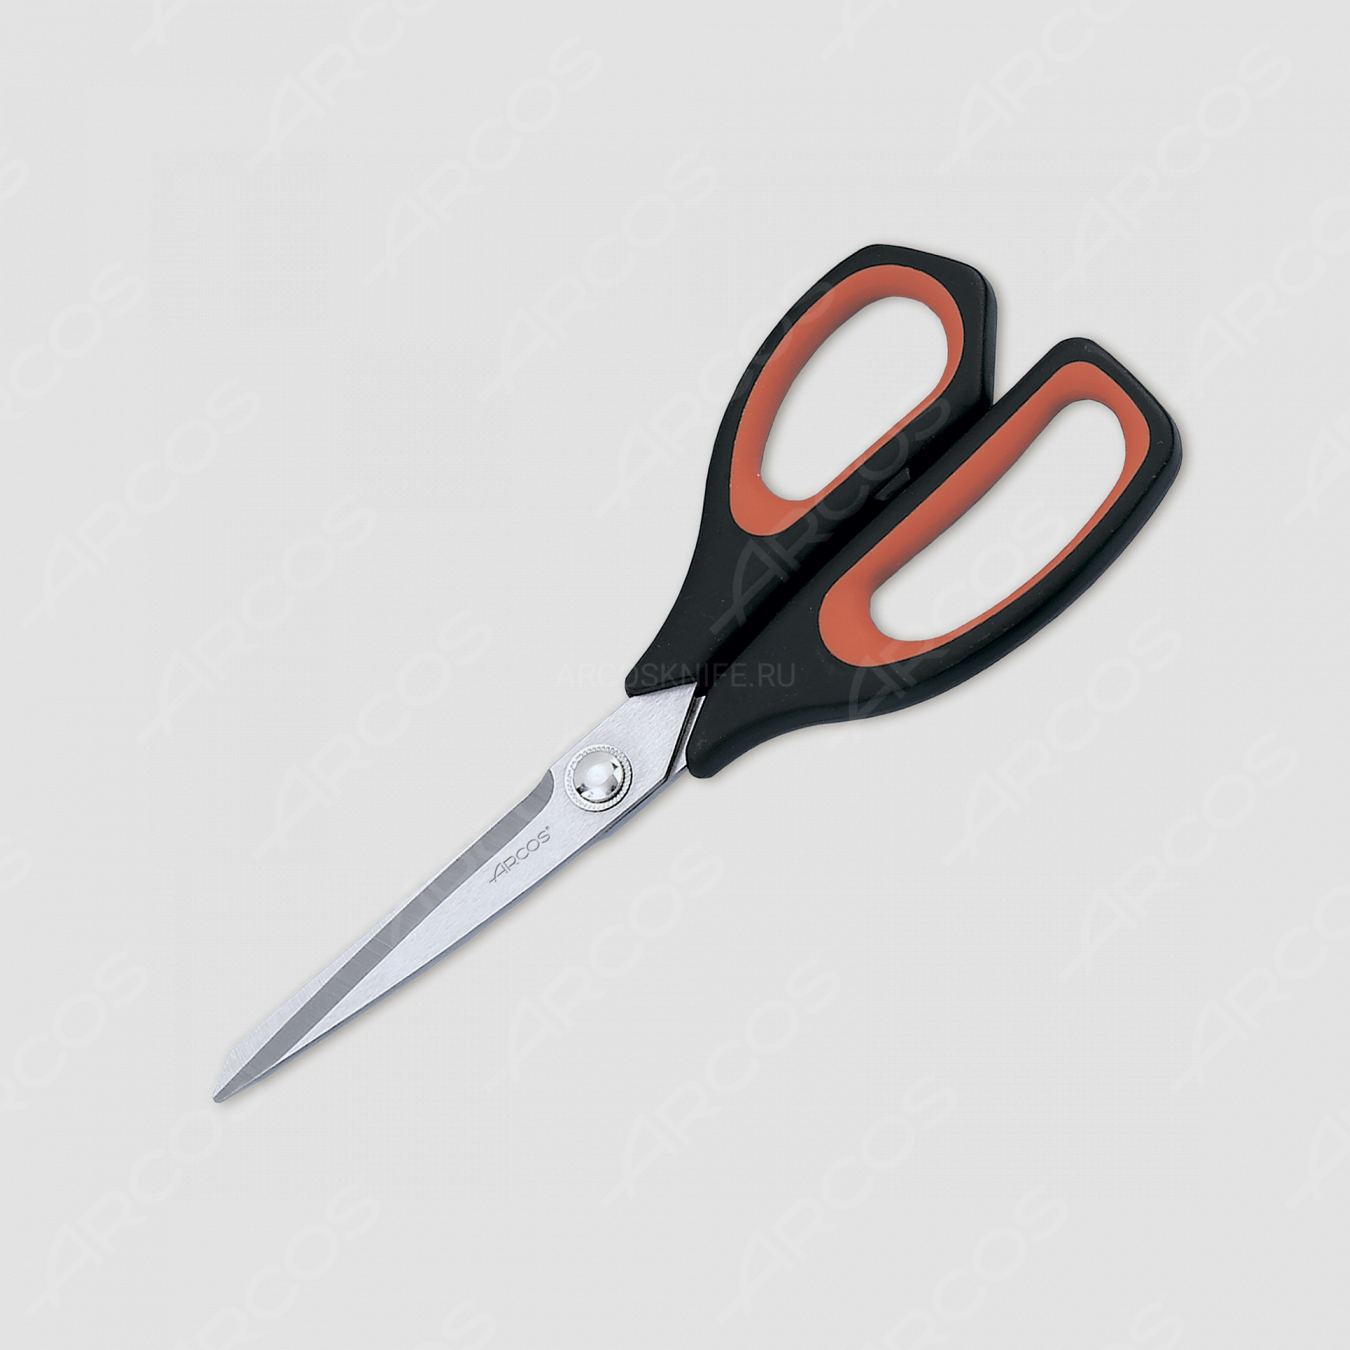 Ножницы кухонные 24 см, рукоять черная, серия Scissors, ARCOS, Испания